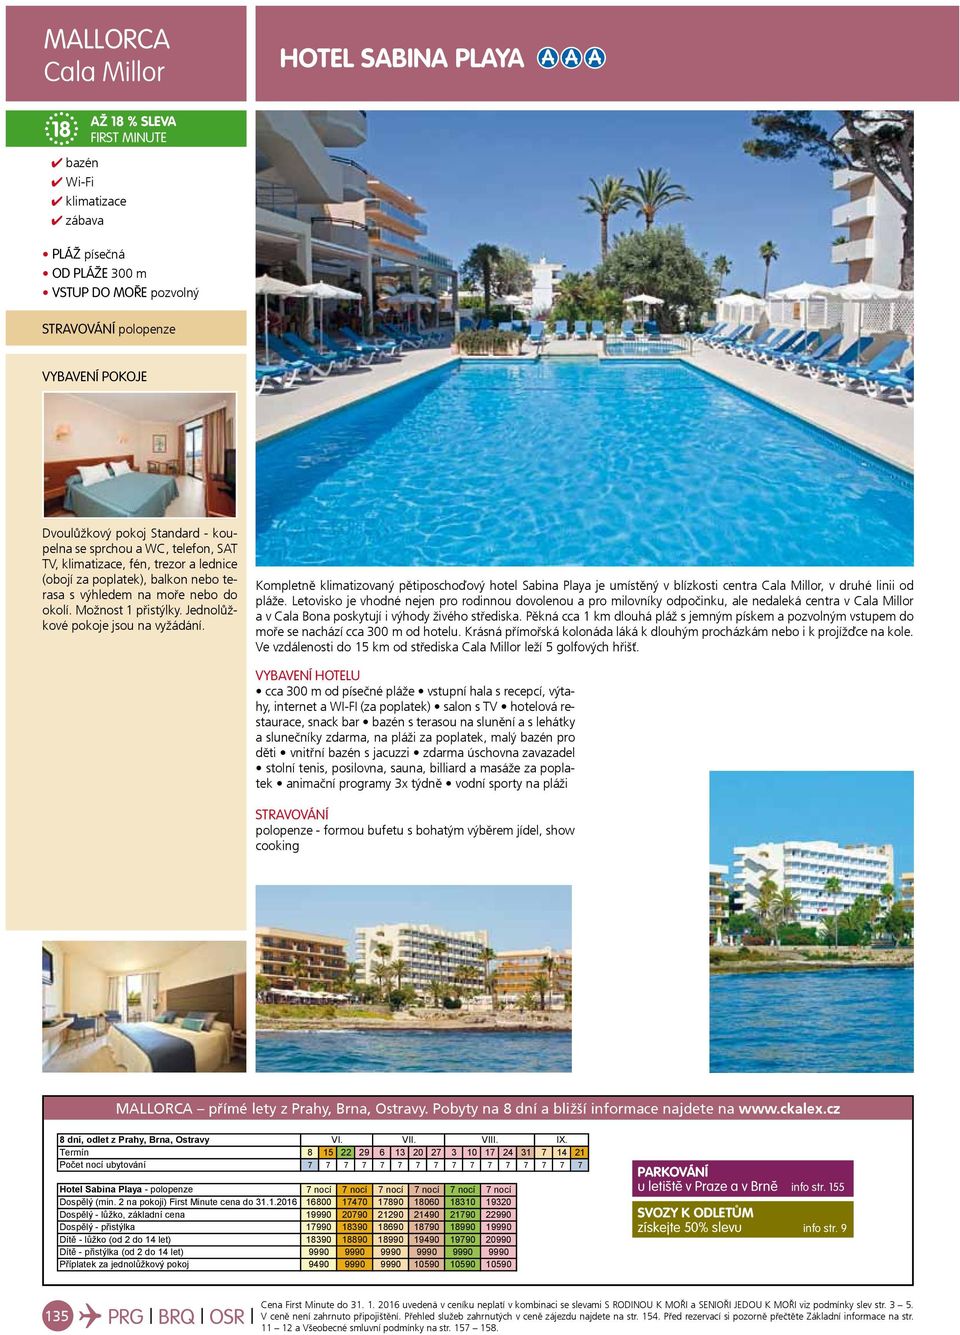 Kompletně klimatizovaný pětiposchoďový hotel Sabina Playa je umístěný v blízkosti centra Cala Millor, v druhé linii od pláže.